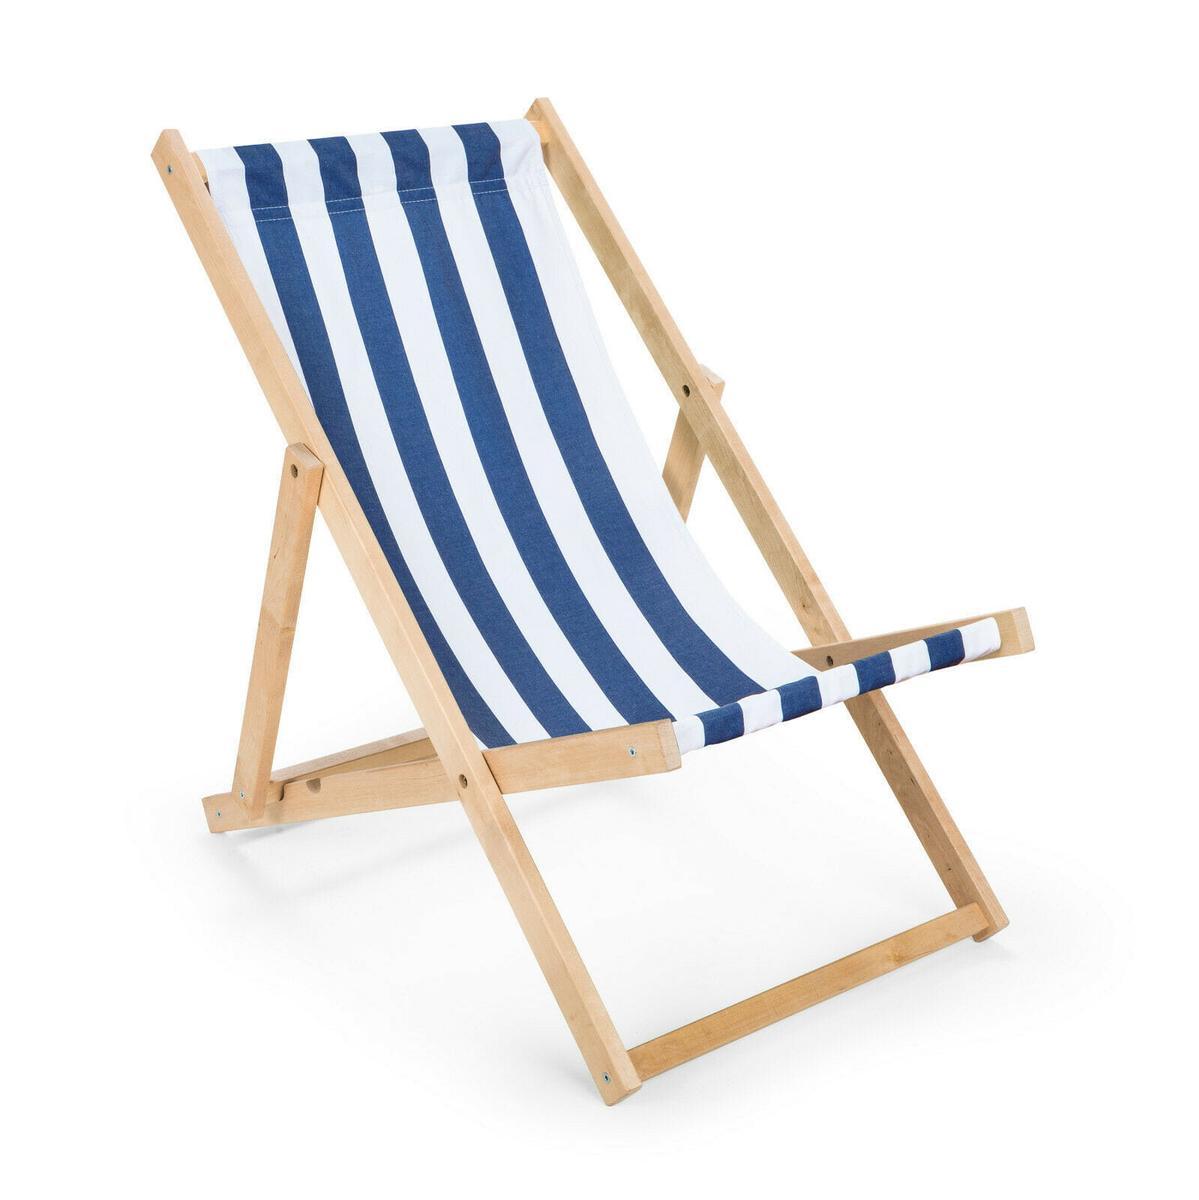 Leżak drewniany 47x112 cm ogrodowy plażowy do ogrodu pasy biało-niebieskie 0 Full Screen